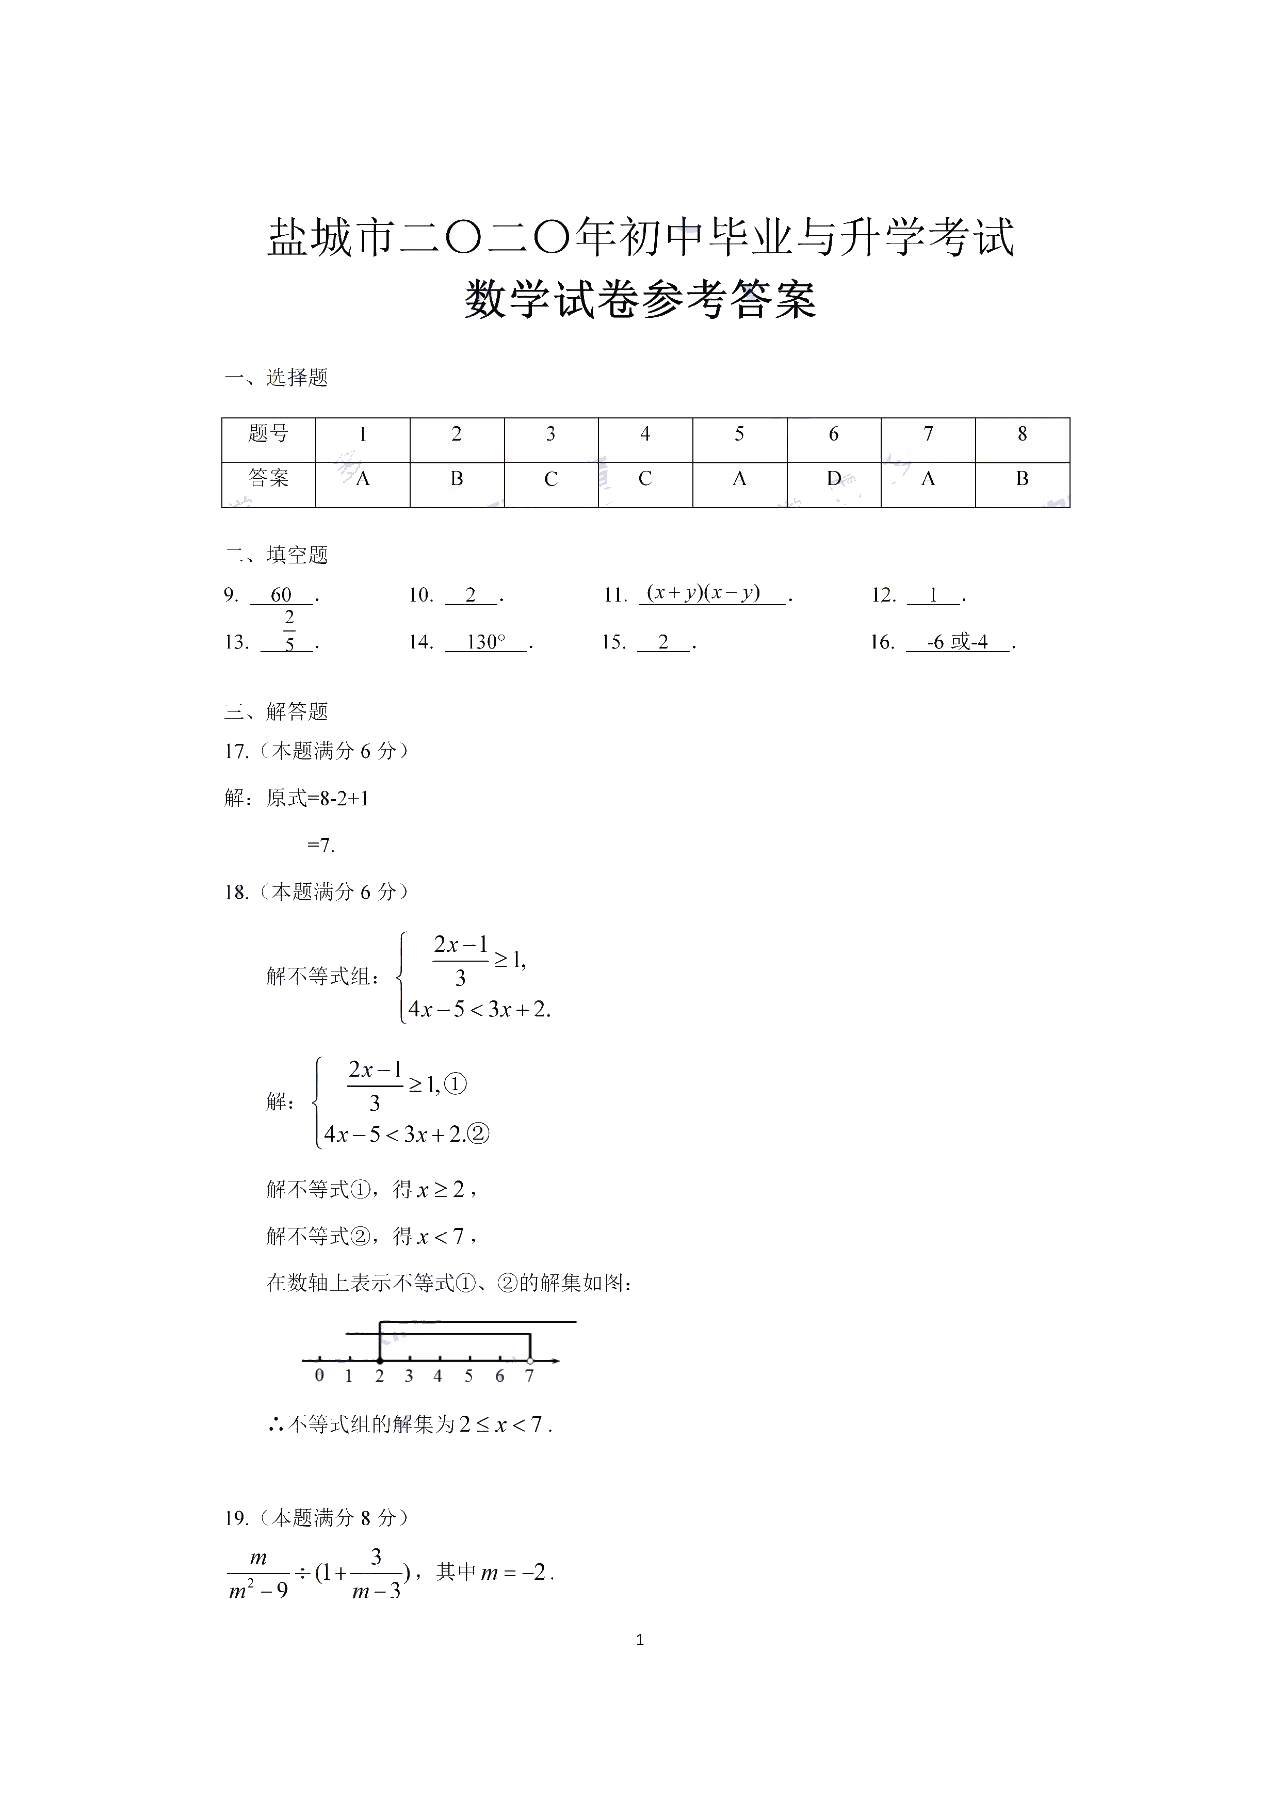 中考数学真题演练 江苏盐城-扫描答案